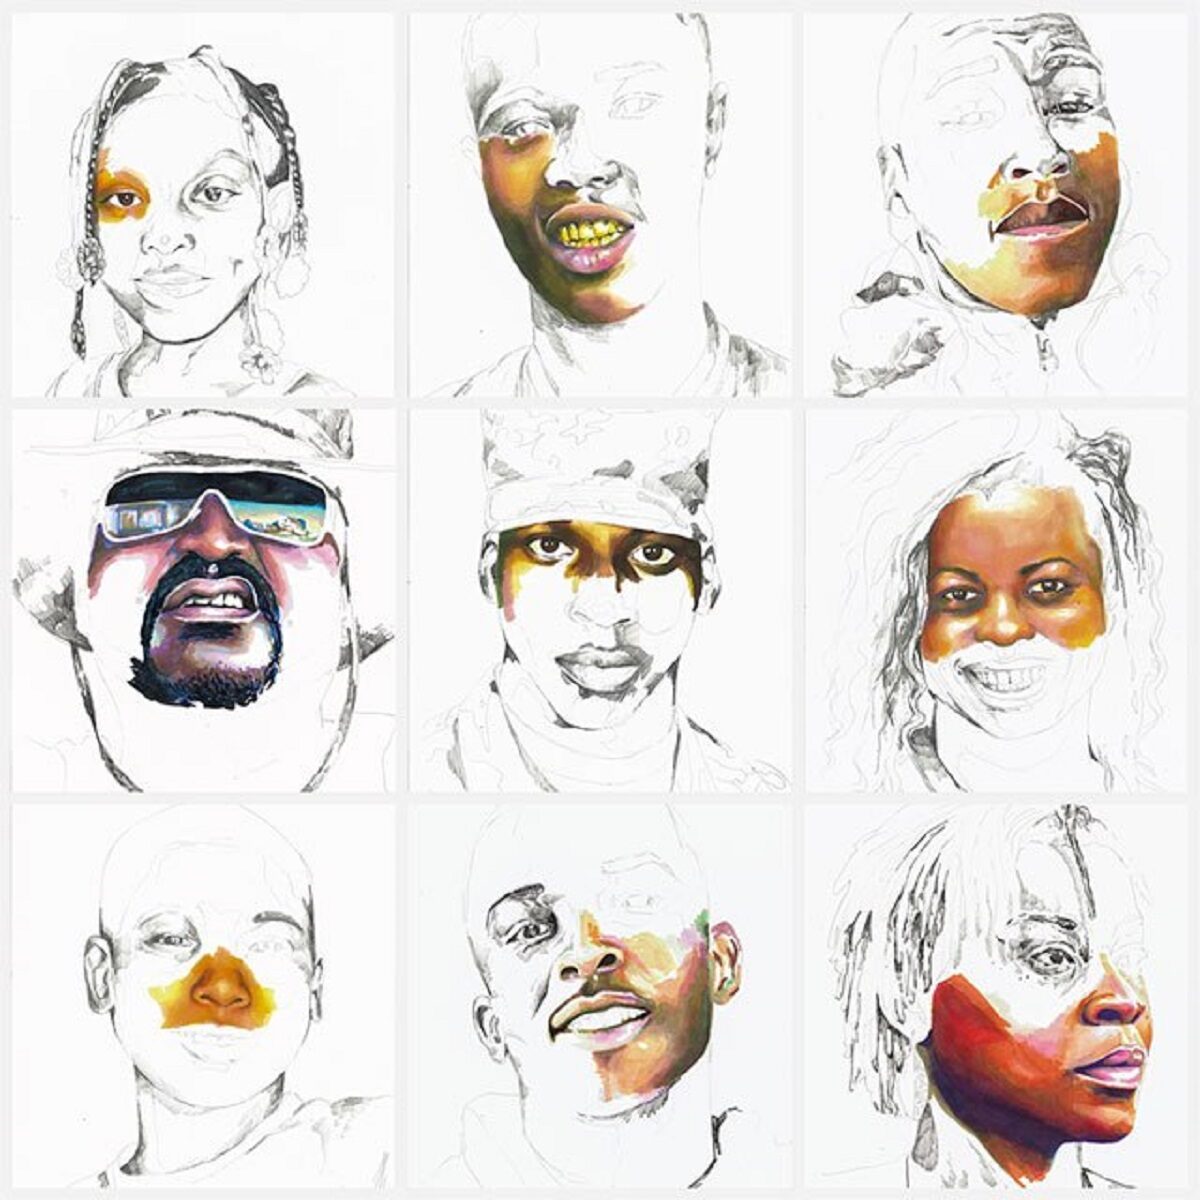 Stolen artista Adrian Brandon cria obra dedicada a negros mortos por policiais 11